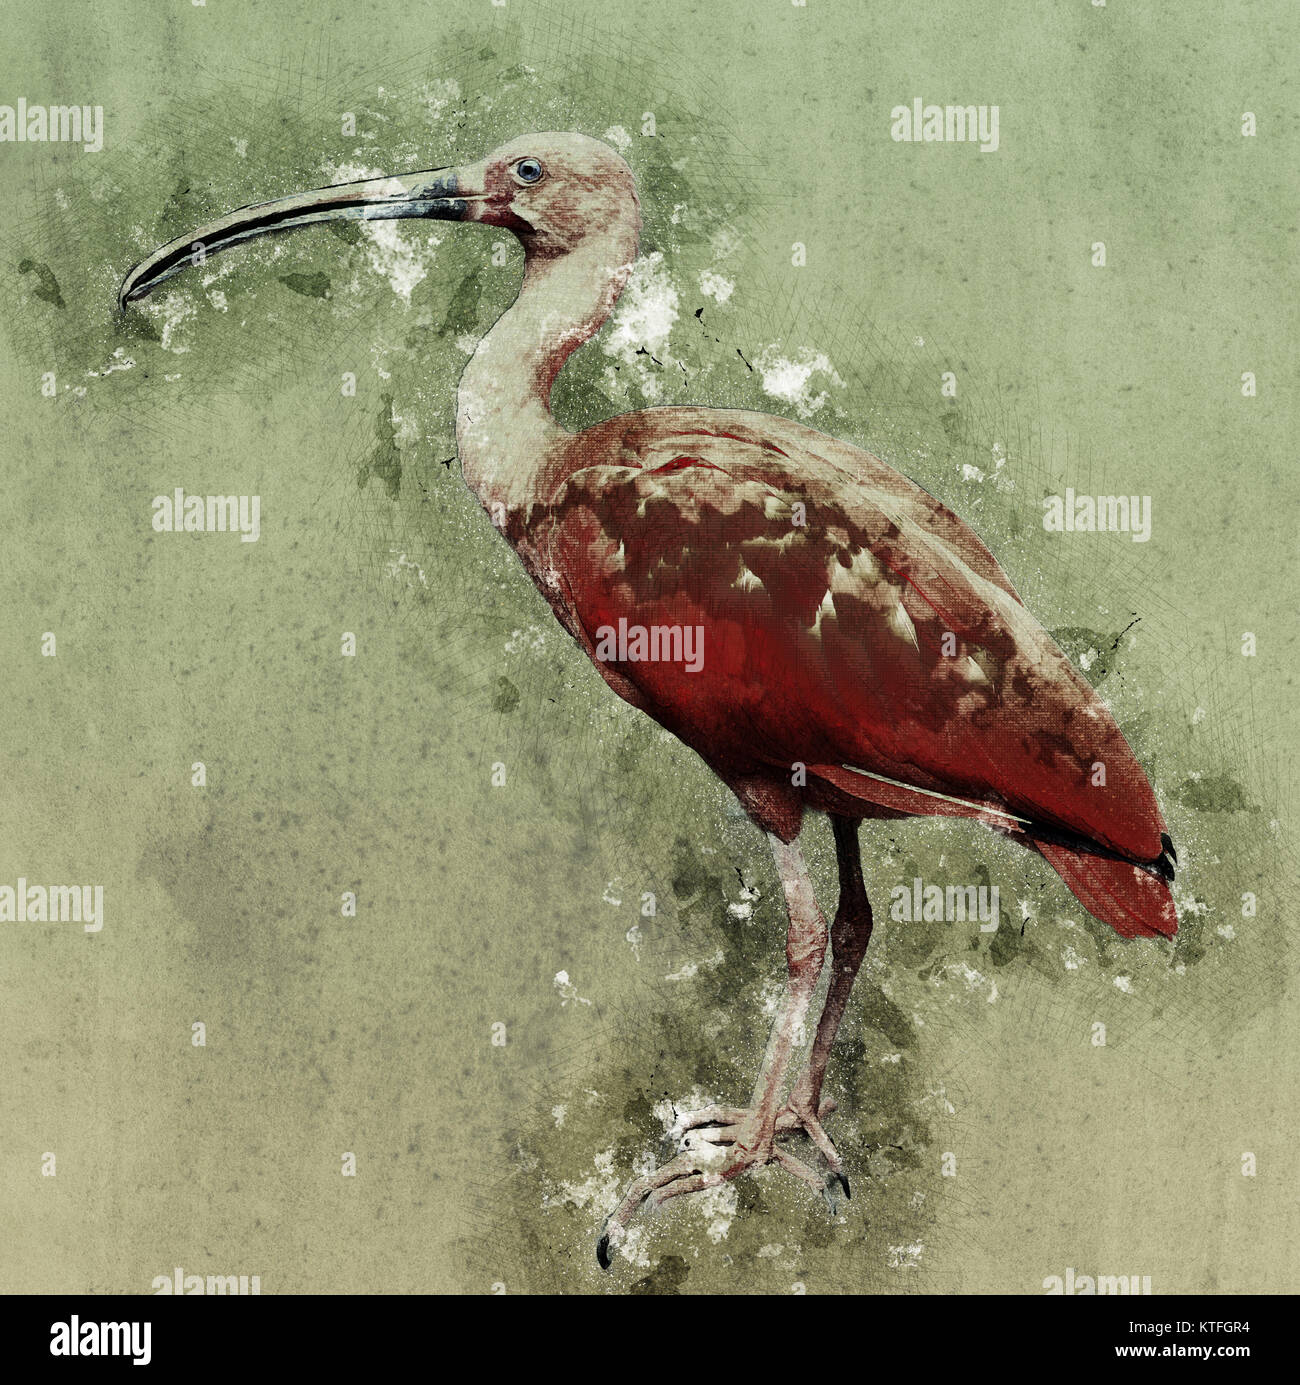 Migliorate digitalmente immagine di Scarlet Ibis (Eudocimus ruber) Vista laterale Foto Stock